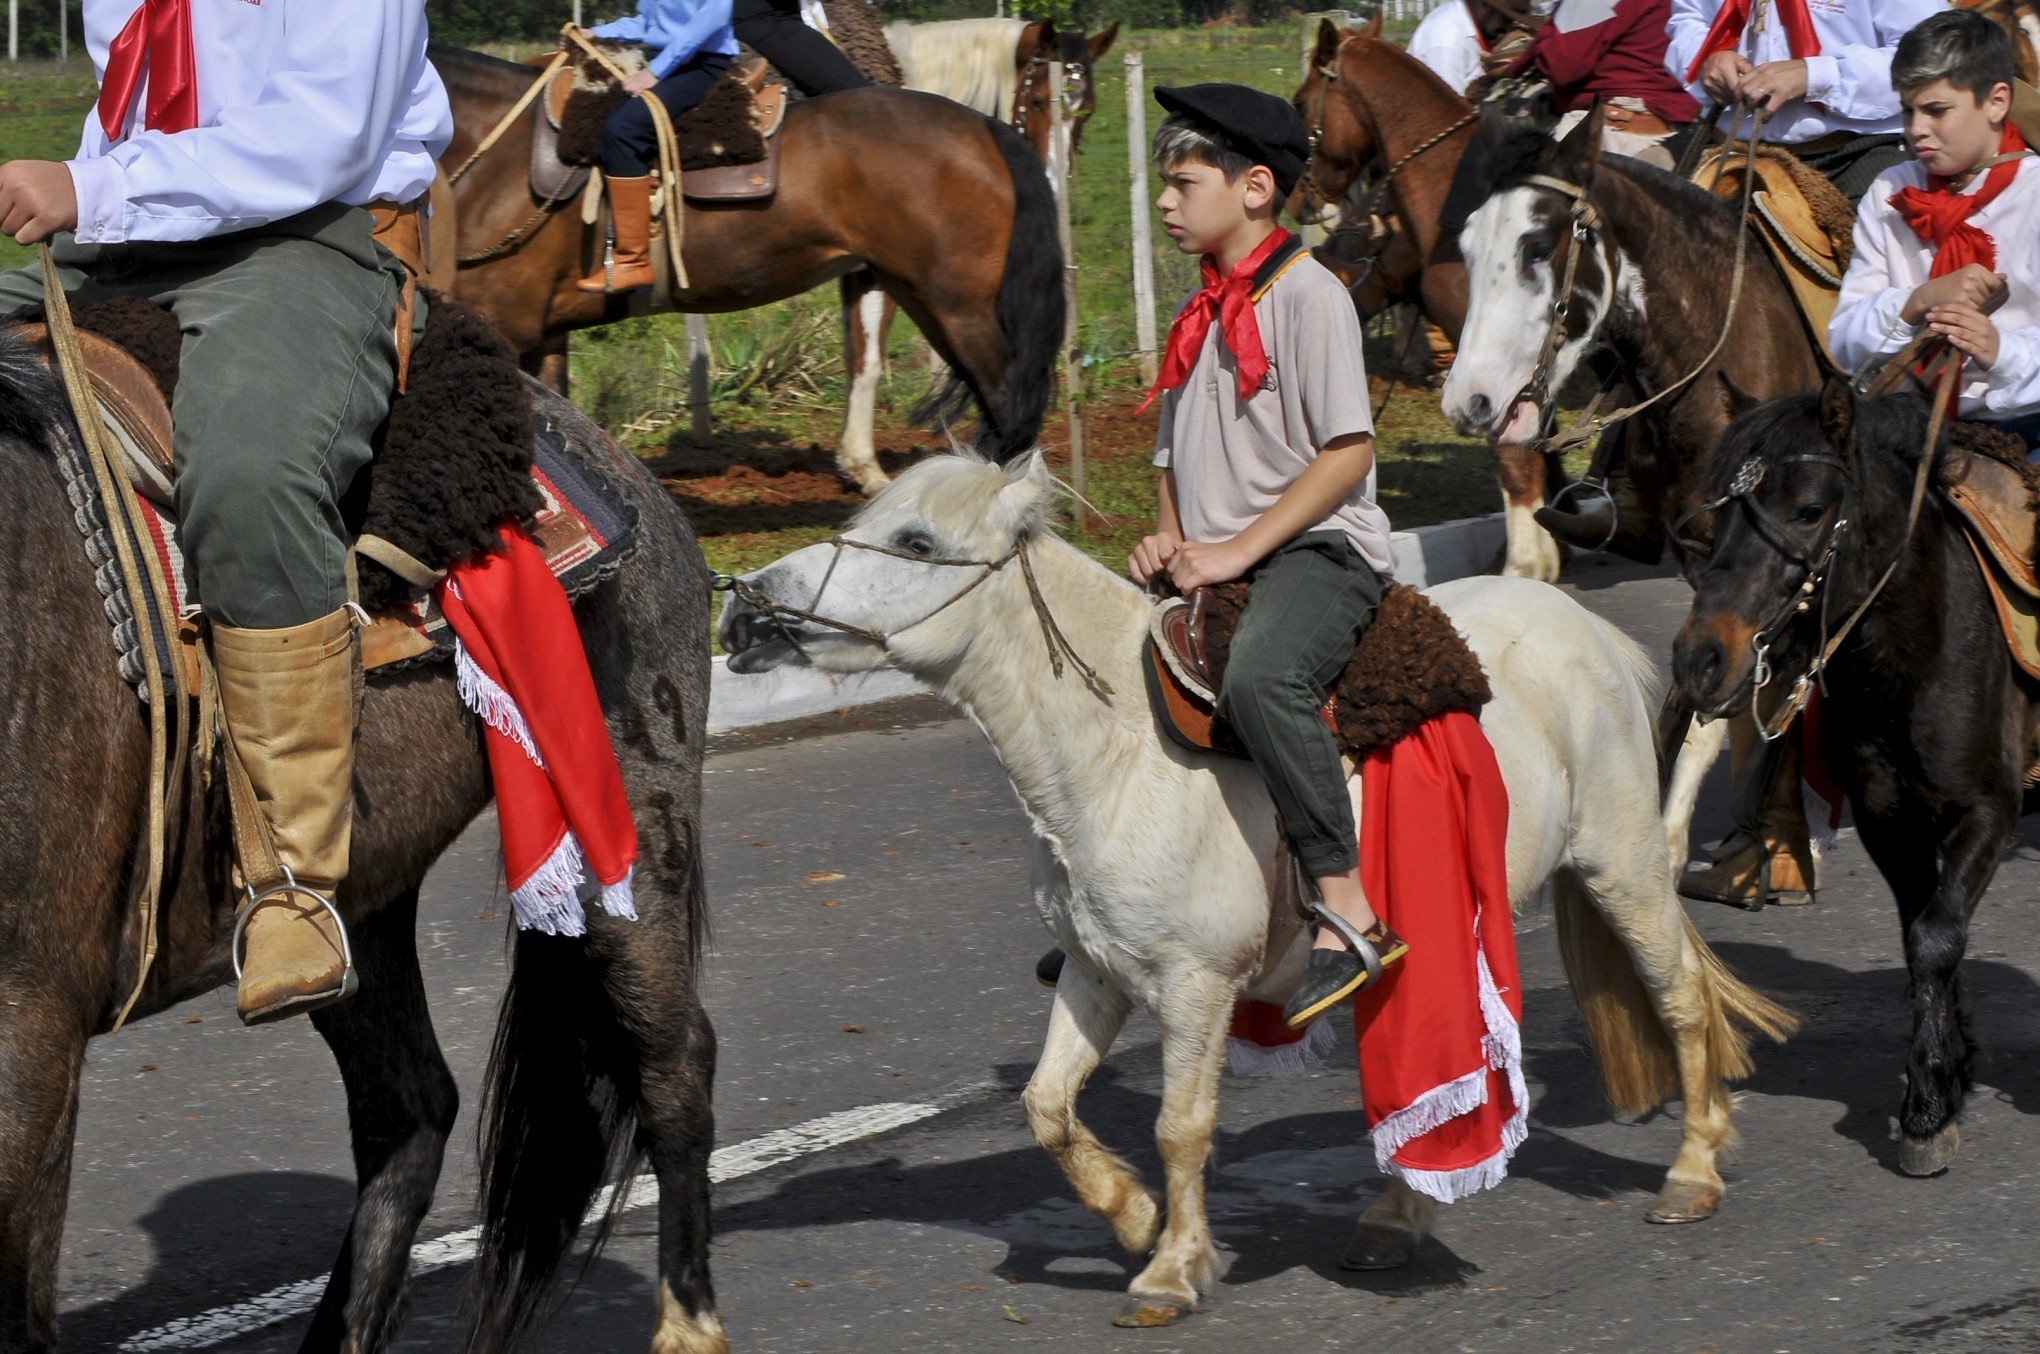 Festa da Cavalaria: está chegando a hora - Litoralmania ®